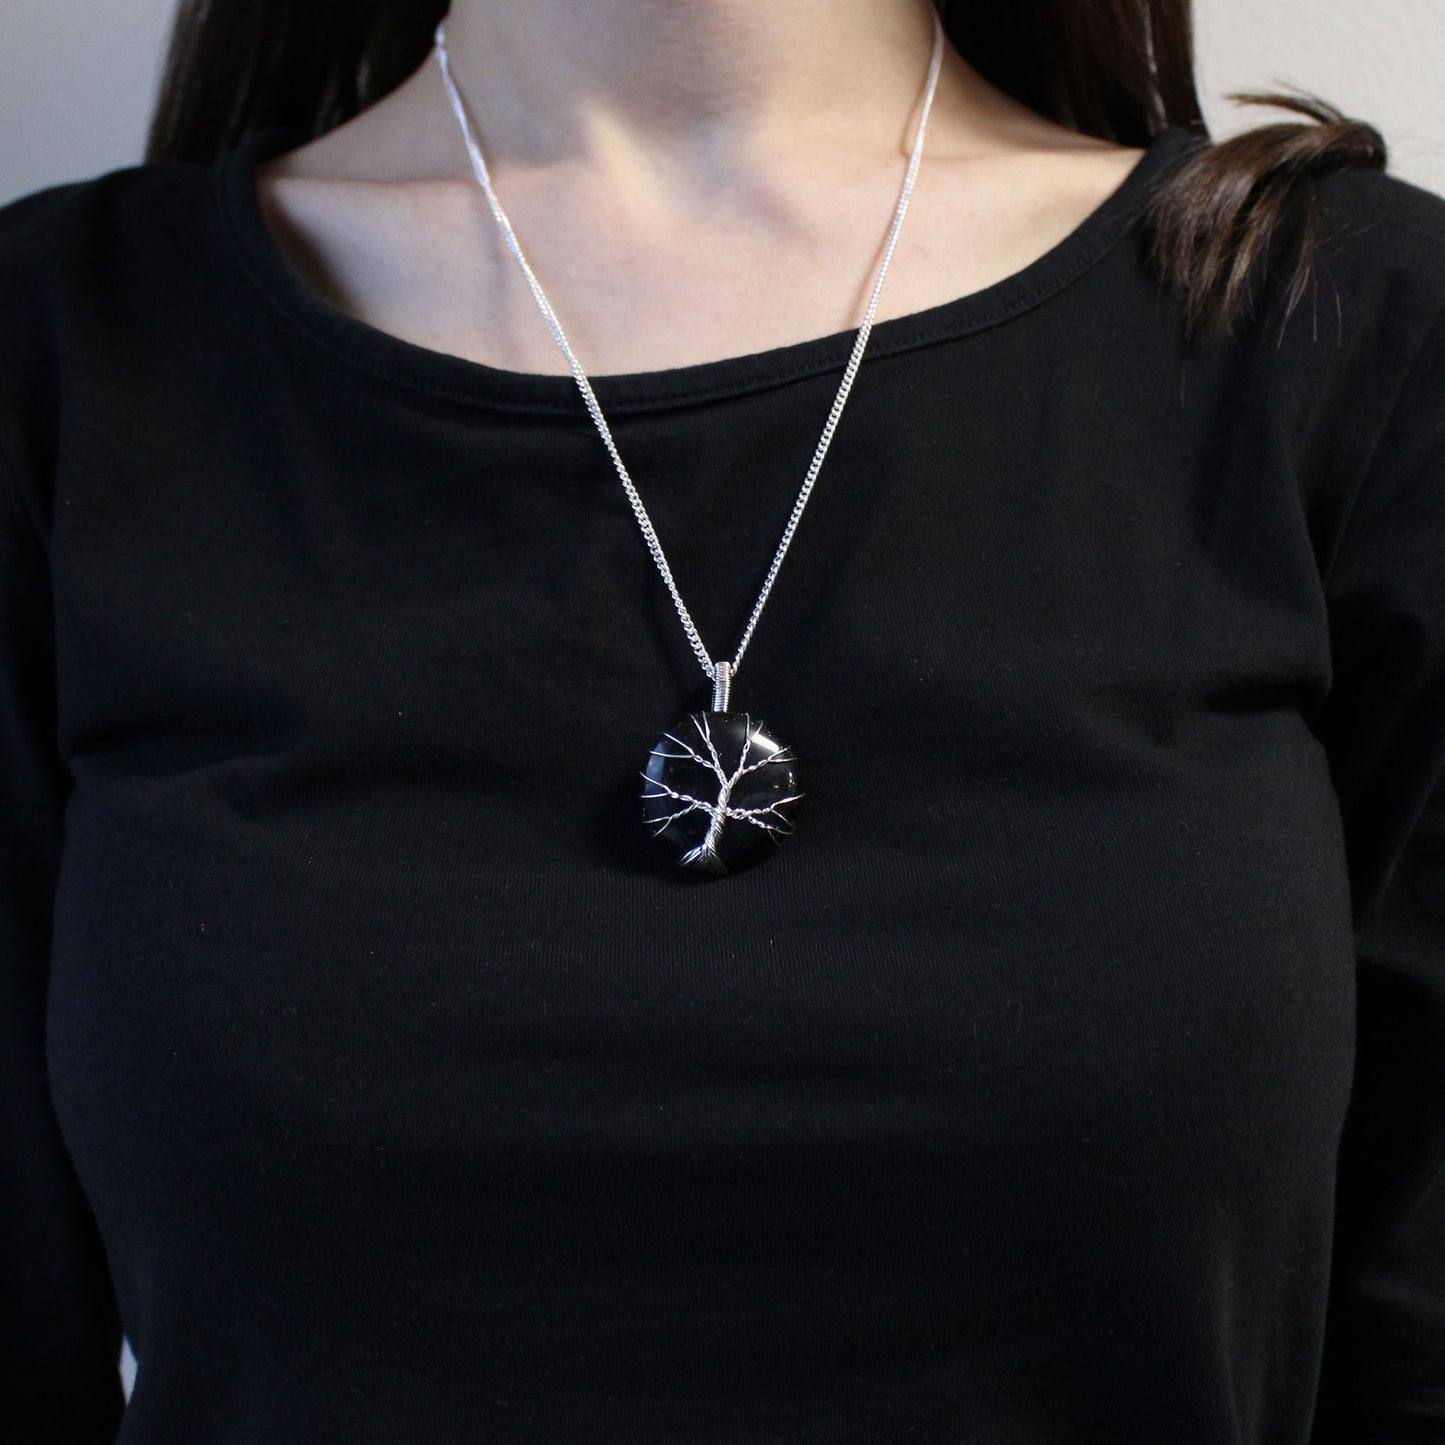 Gemstone Necklace - Tree of Life  (Black Onyx)